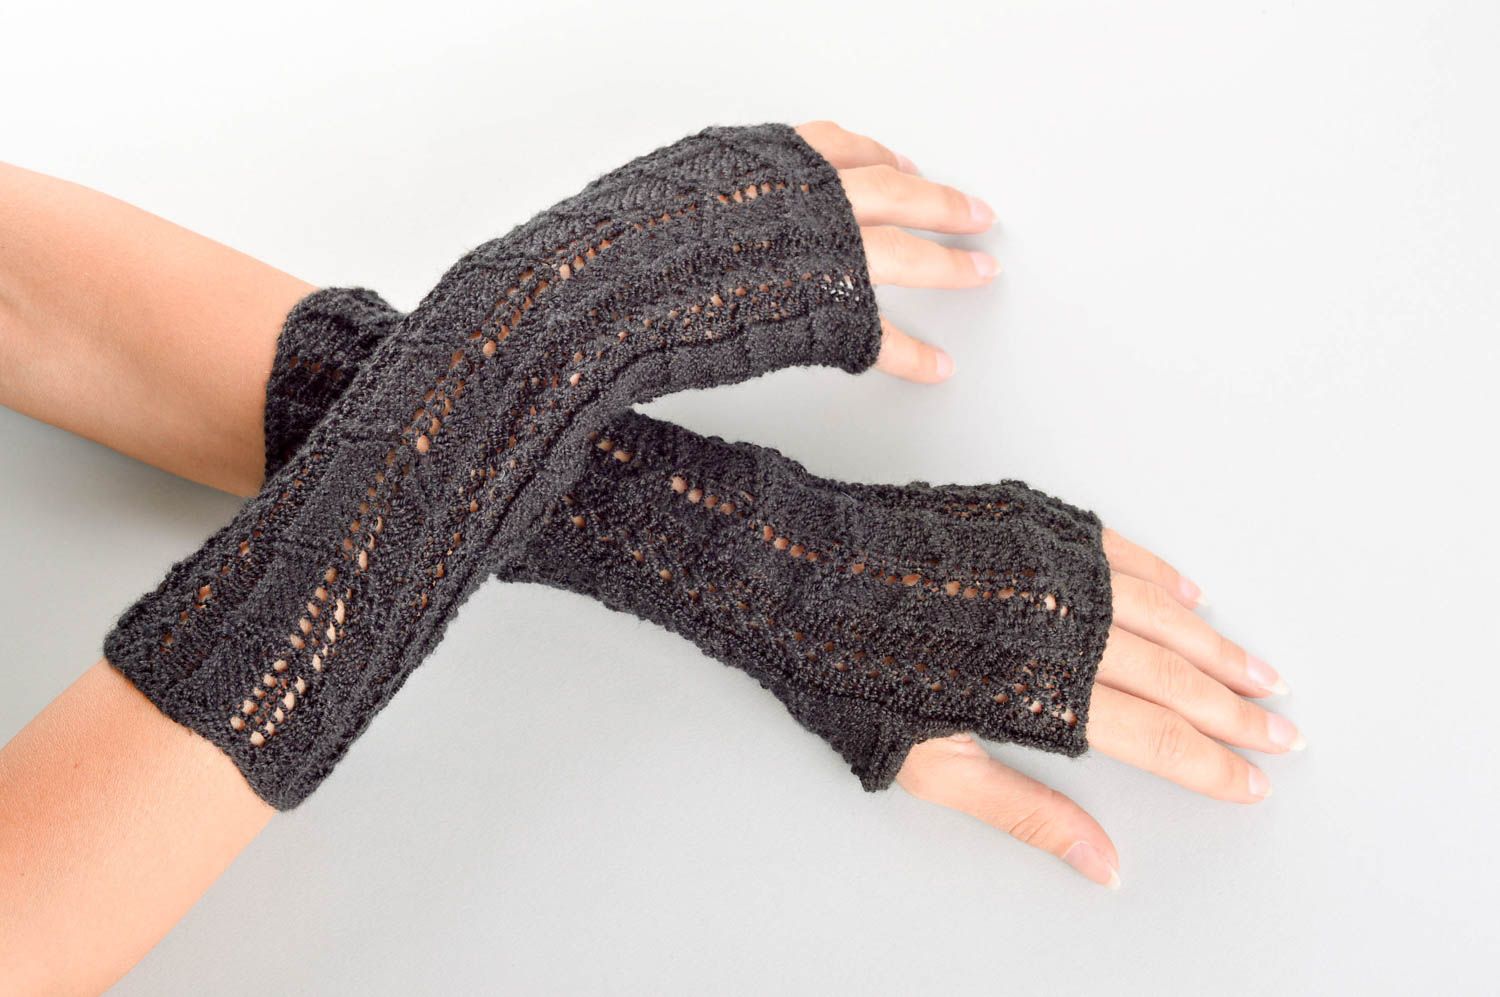 Beautiful handmade crochet mittens warm mittens design winter outfit gift ideas photo 1